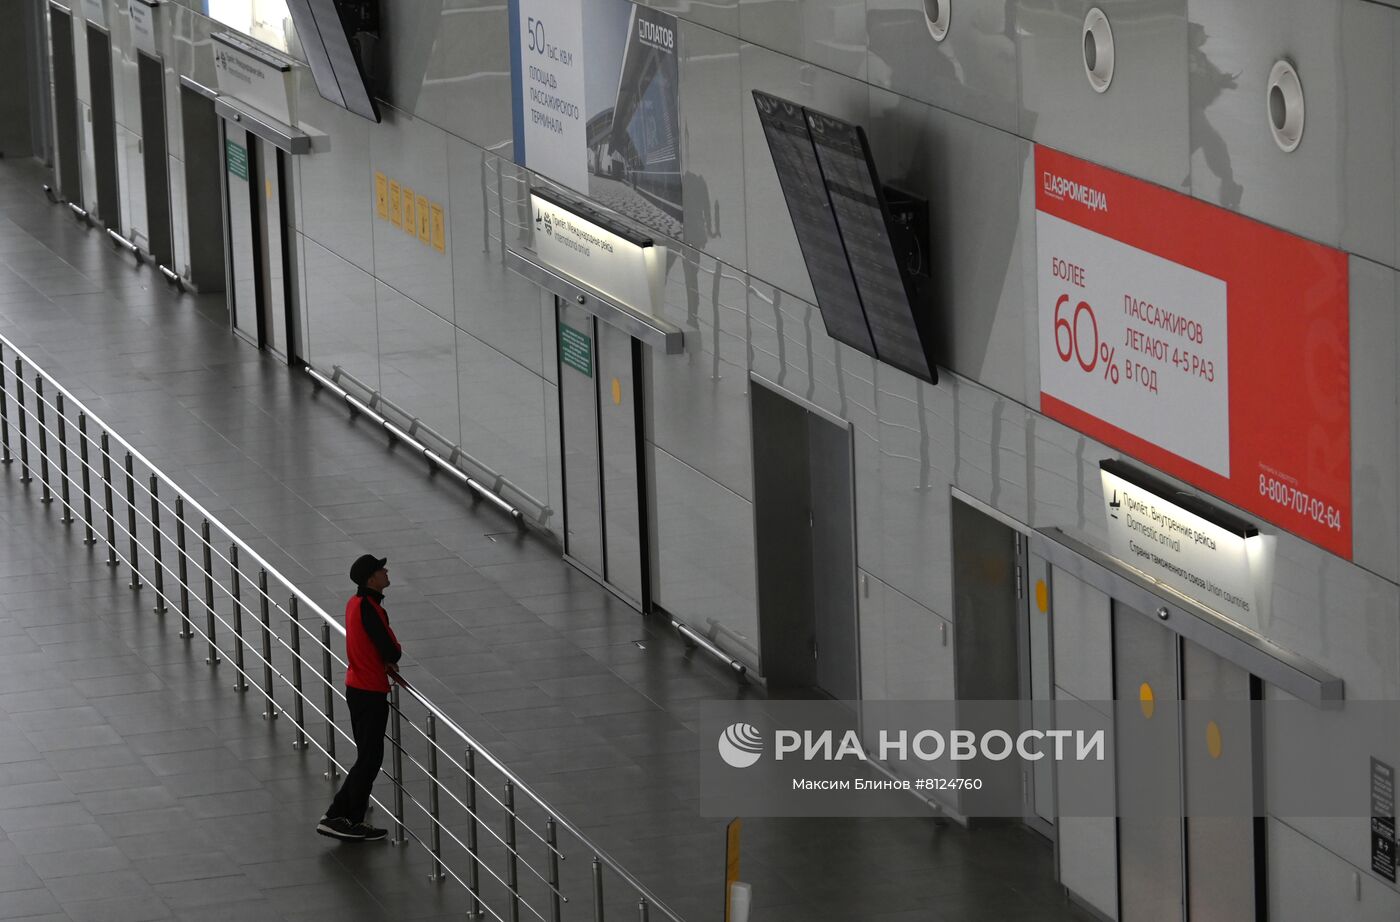 Прекращение полетов из аэропортов юга России из-за запрета использования южного воздушного пространства